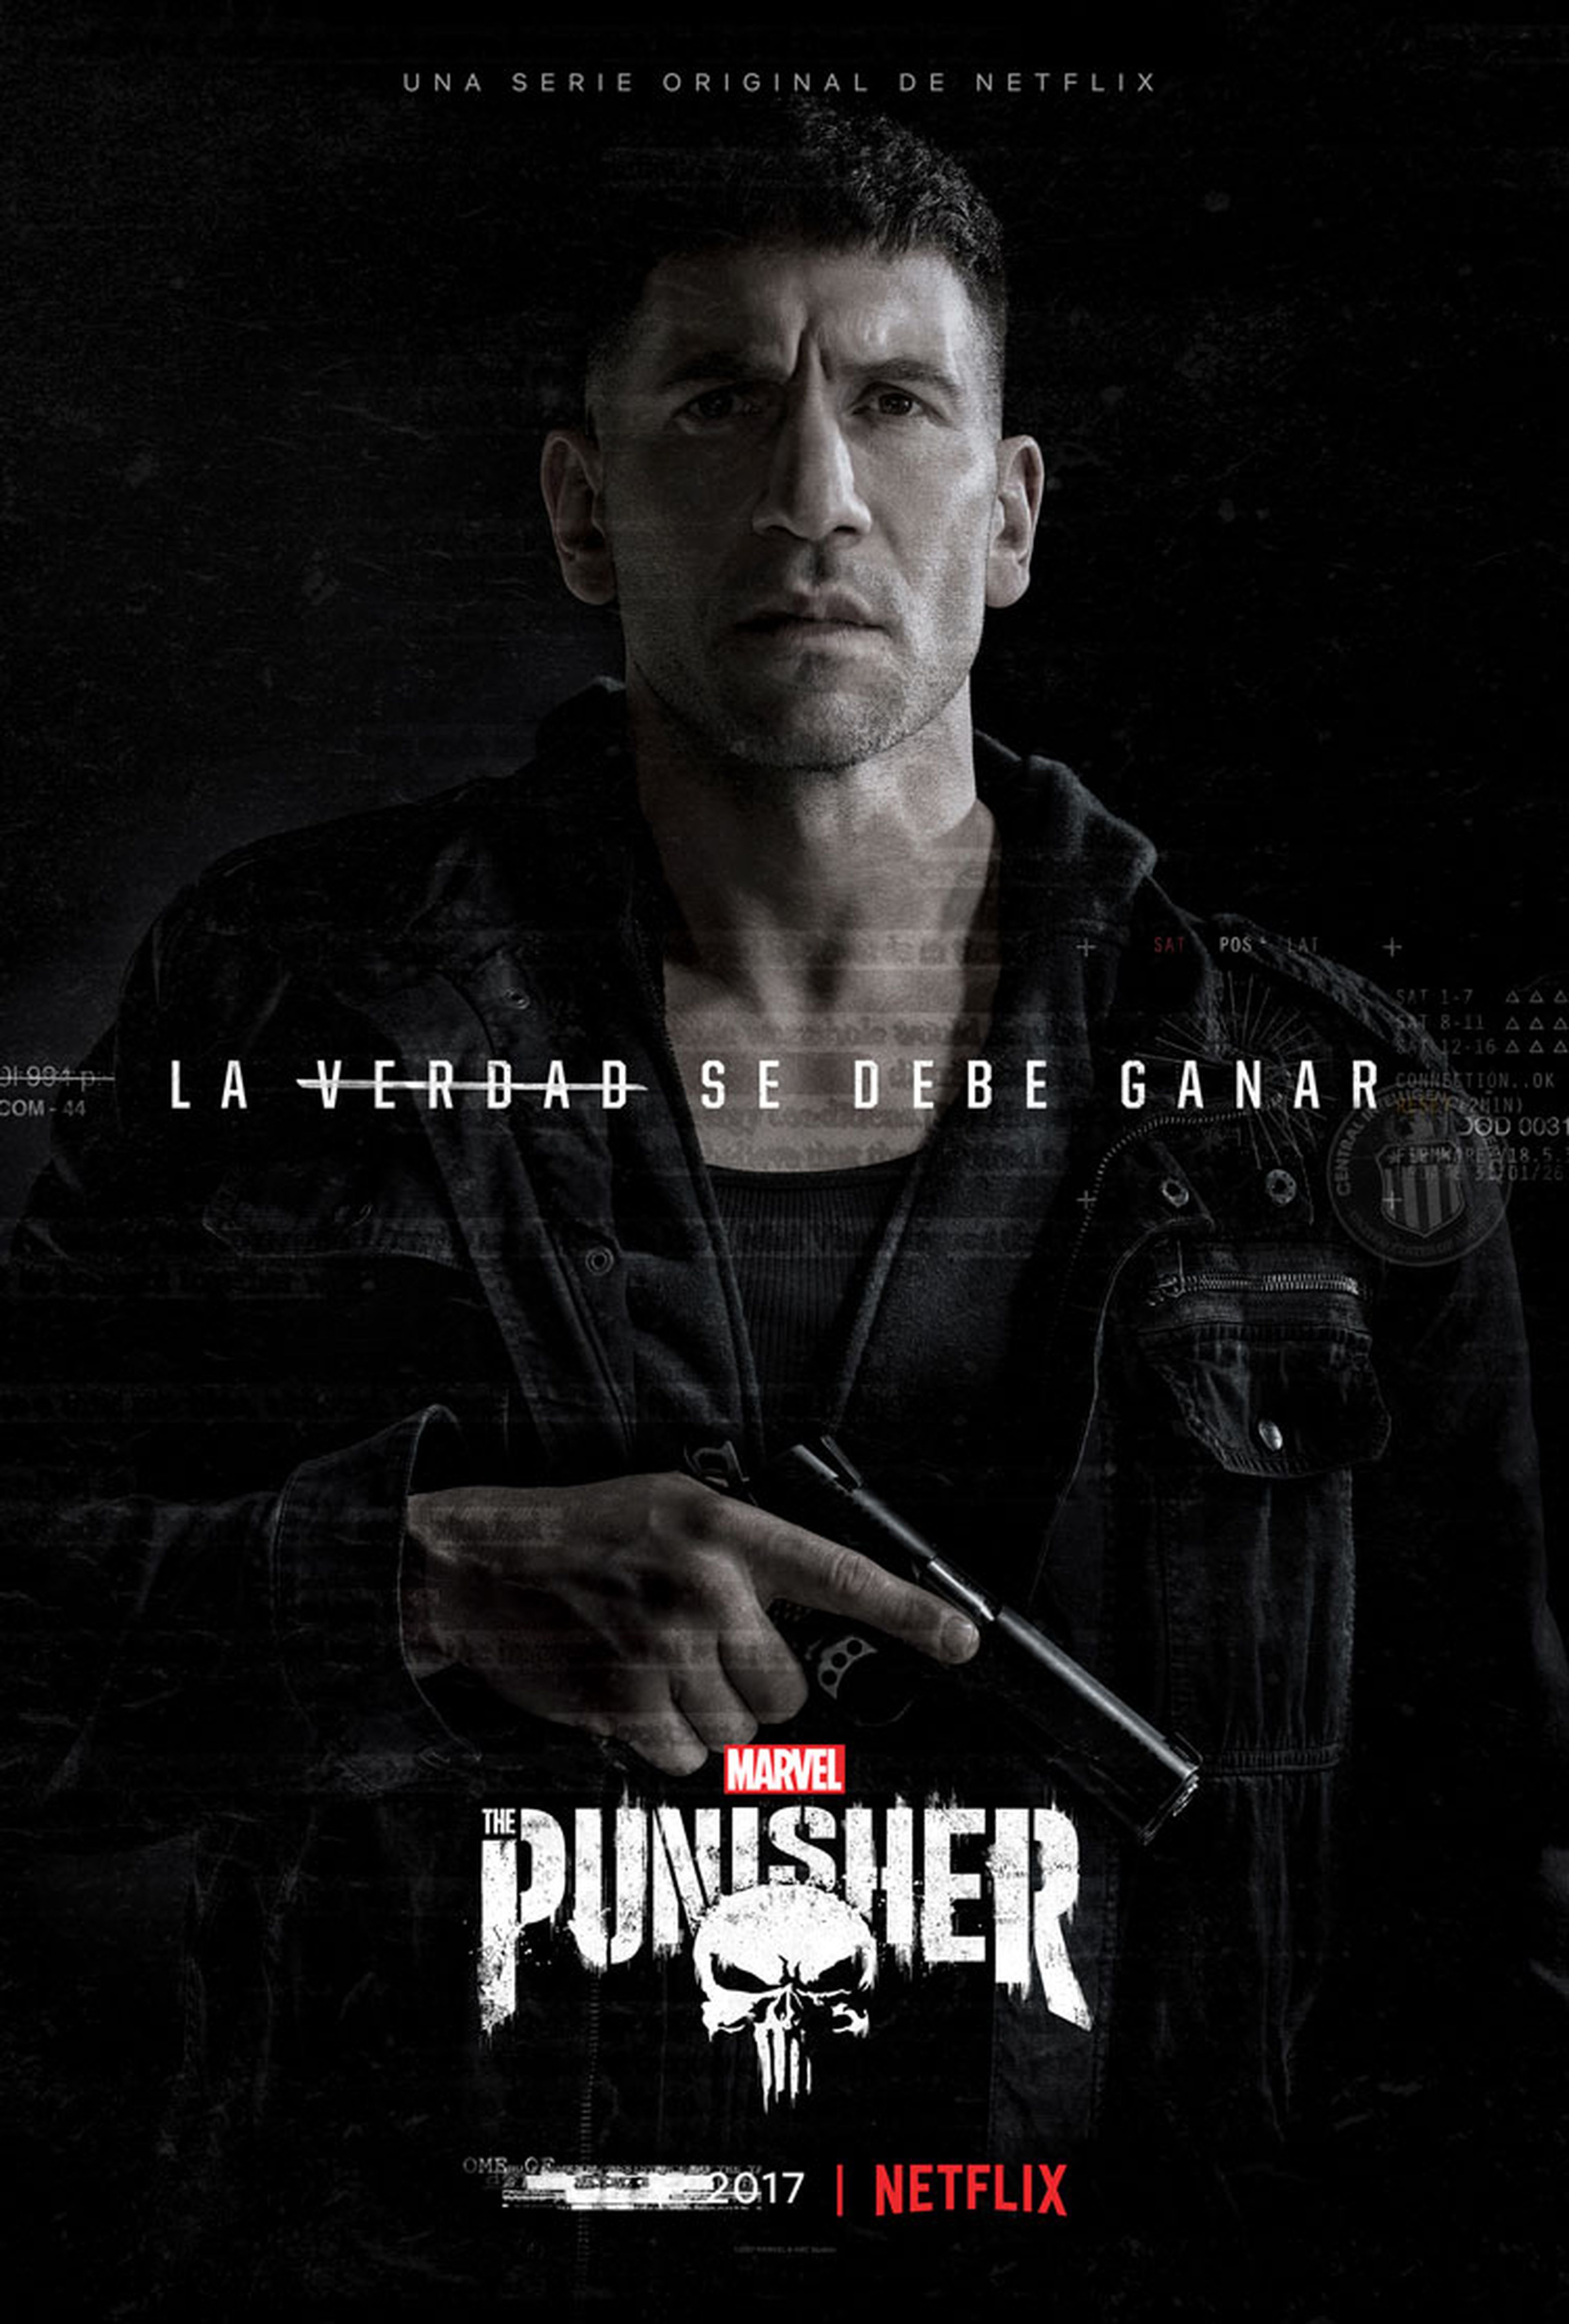 Marvel's The Punisher - El Castigador de Netflix